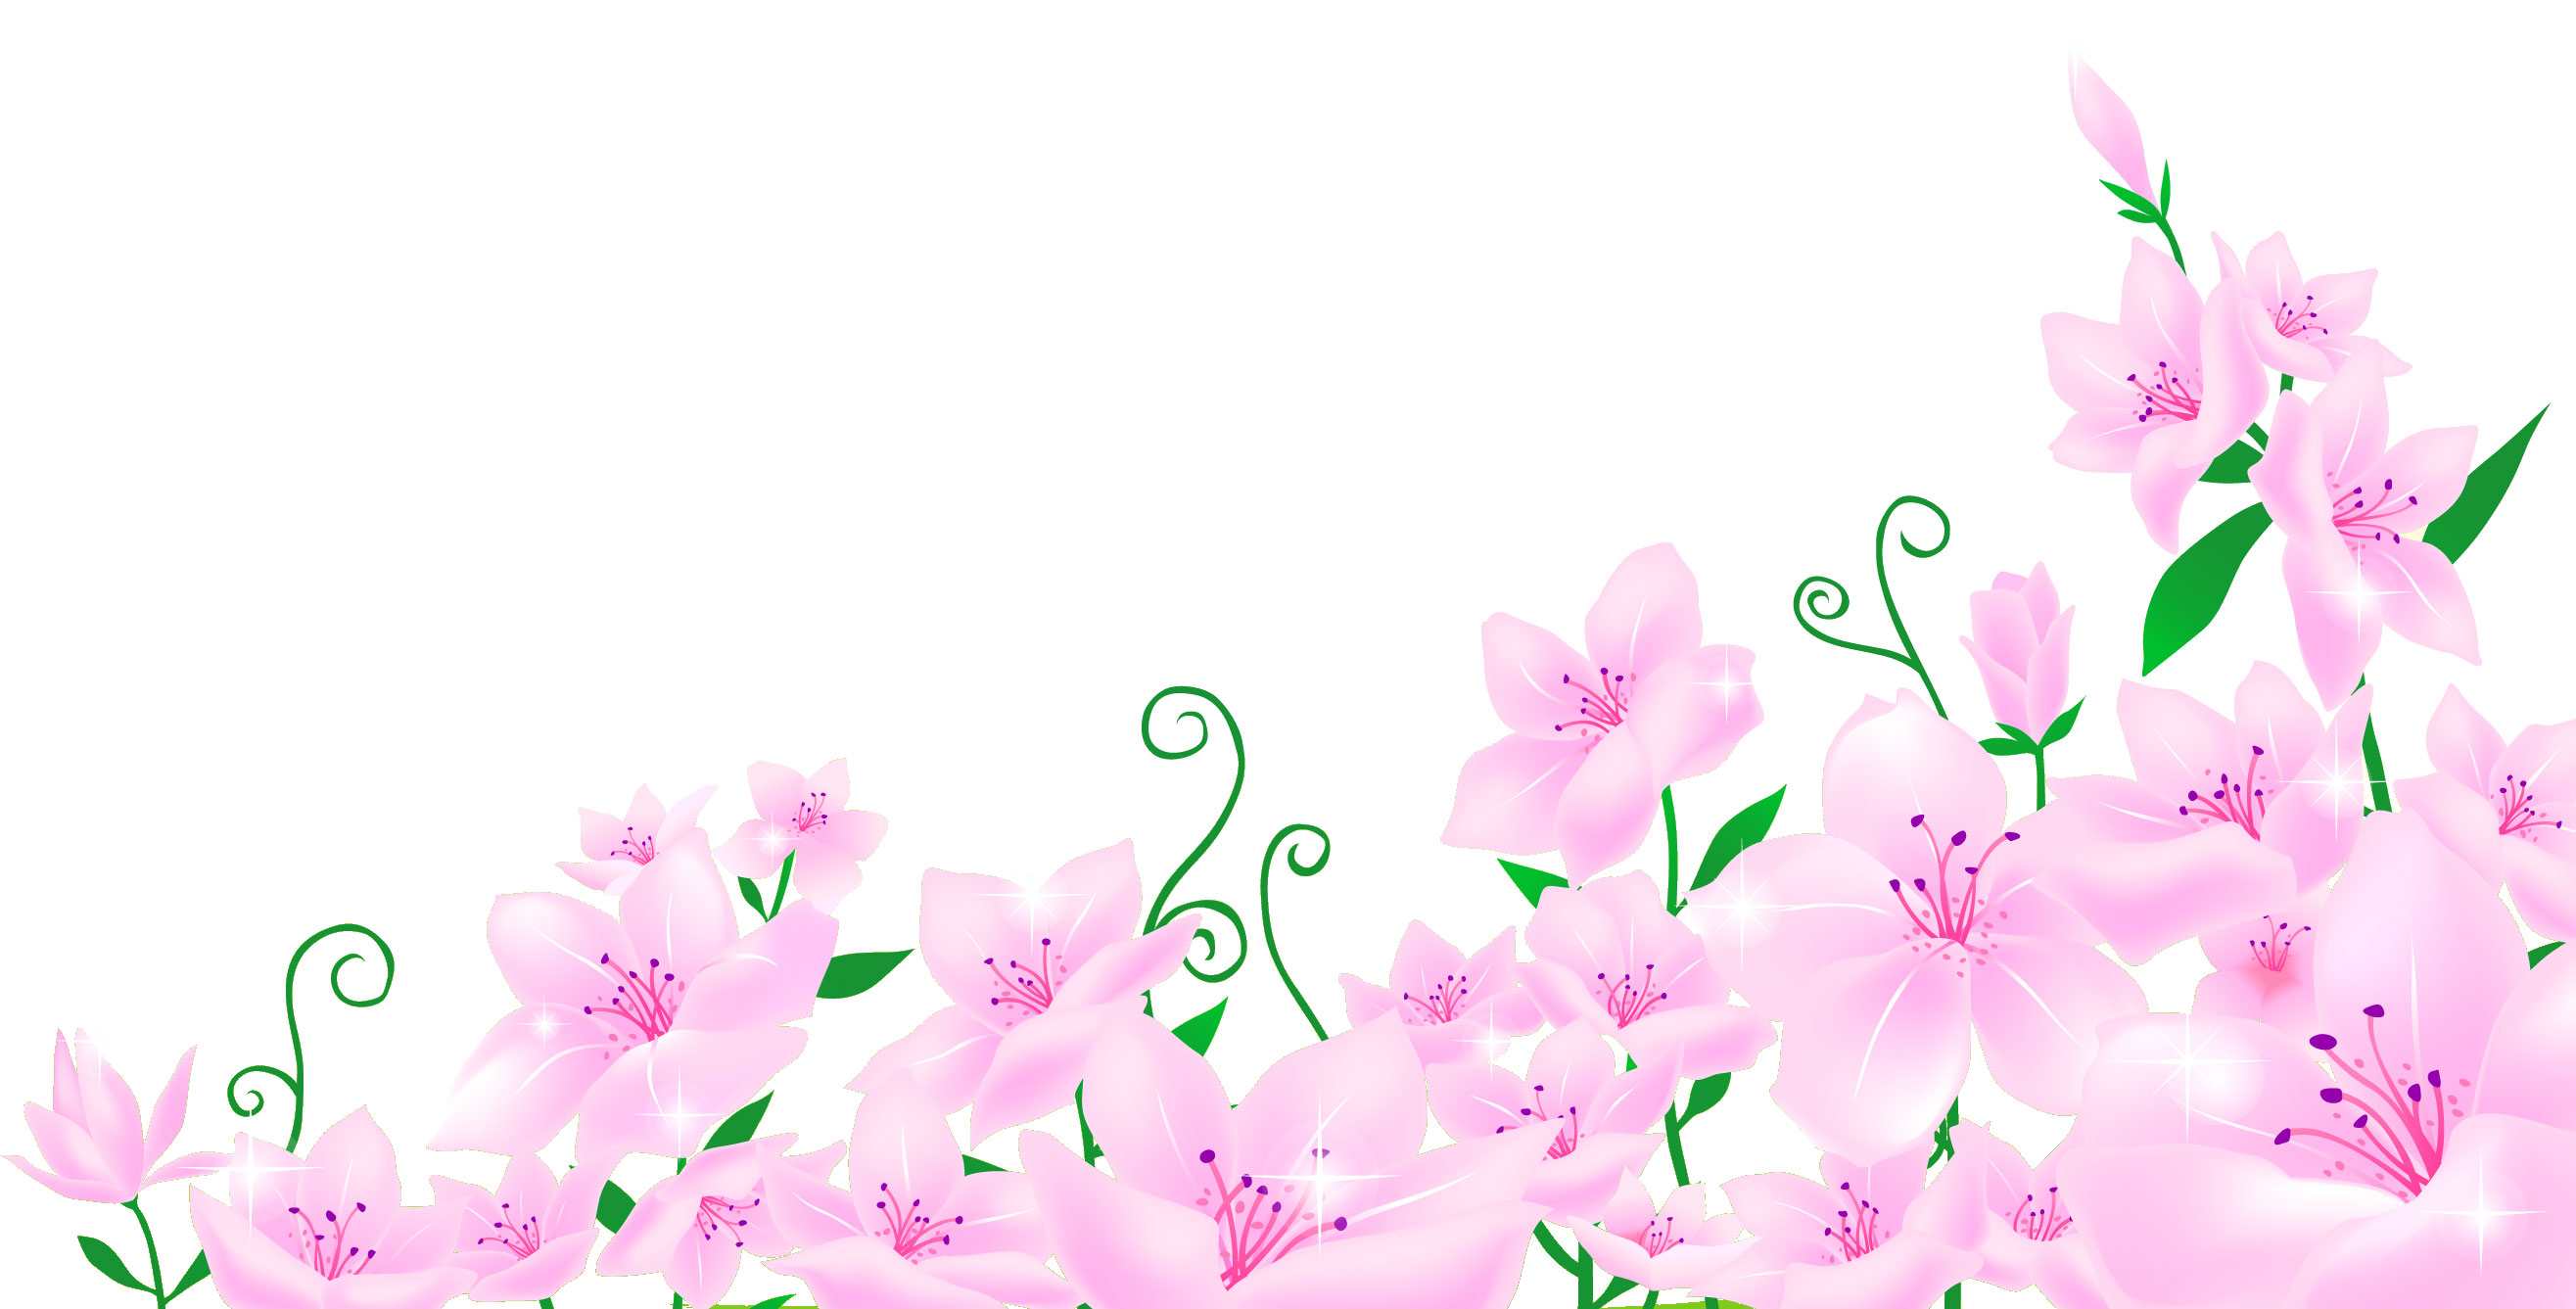 ポップでかわいい花のイラスト フリー素材 No 369 ピンク たくさん 葉